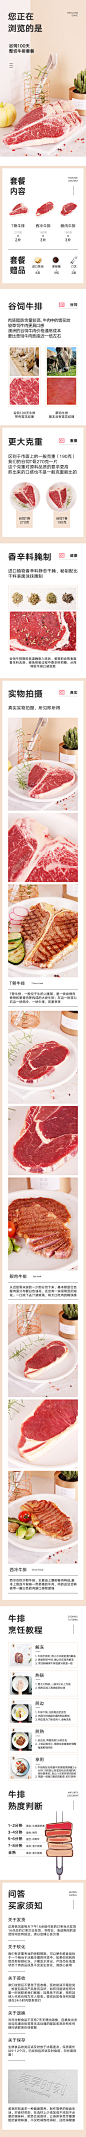 澳洲新鲜原肉整切牛排食品详情页